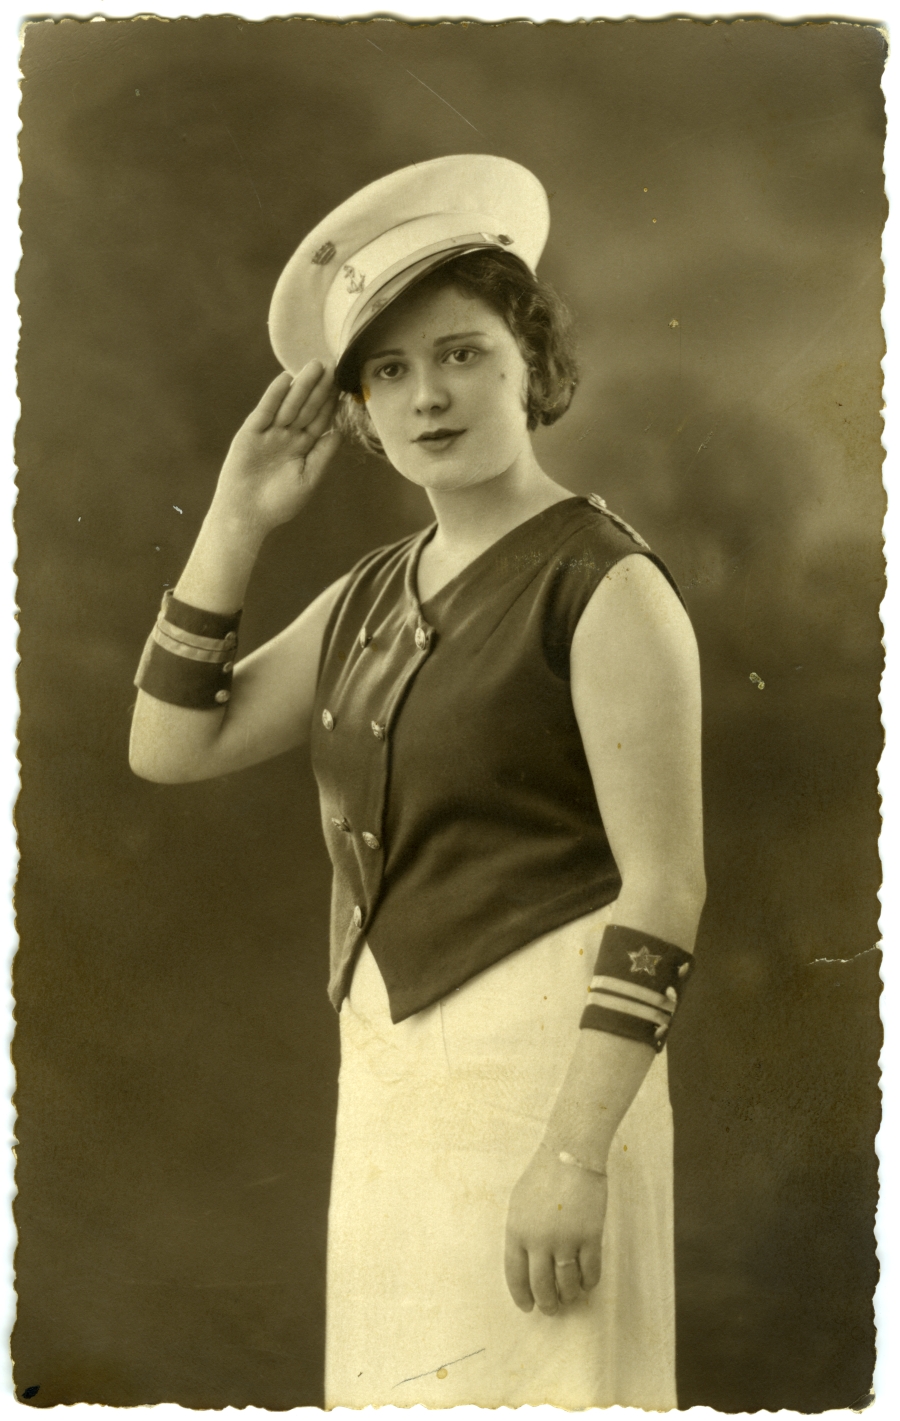 Retrato de una mujer joven disfrazada de marinera